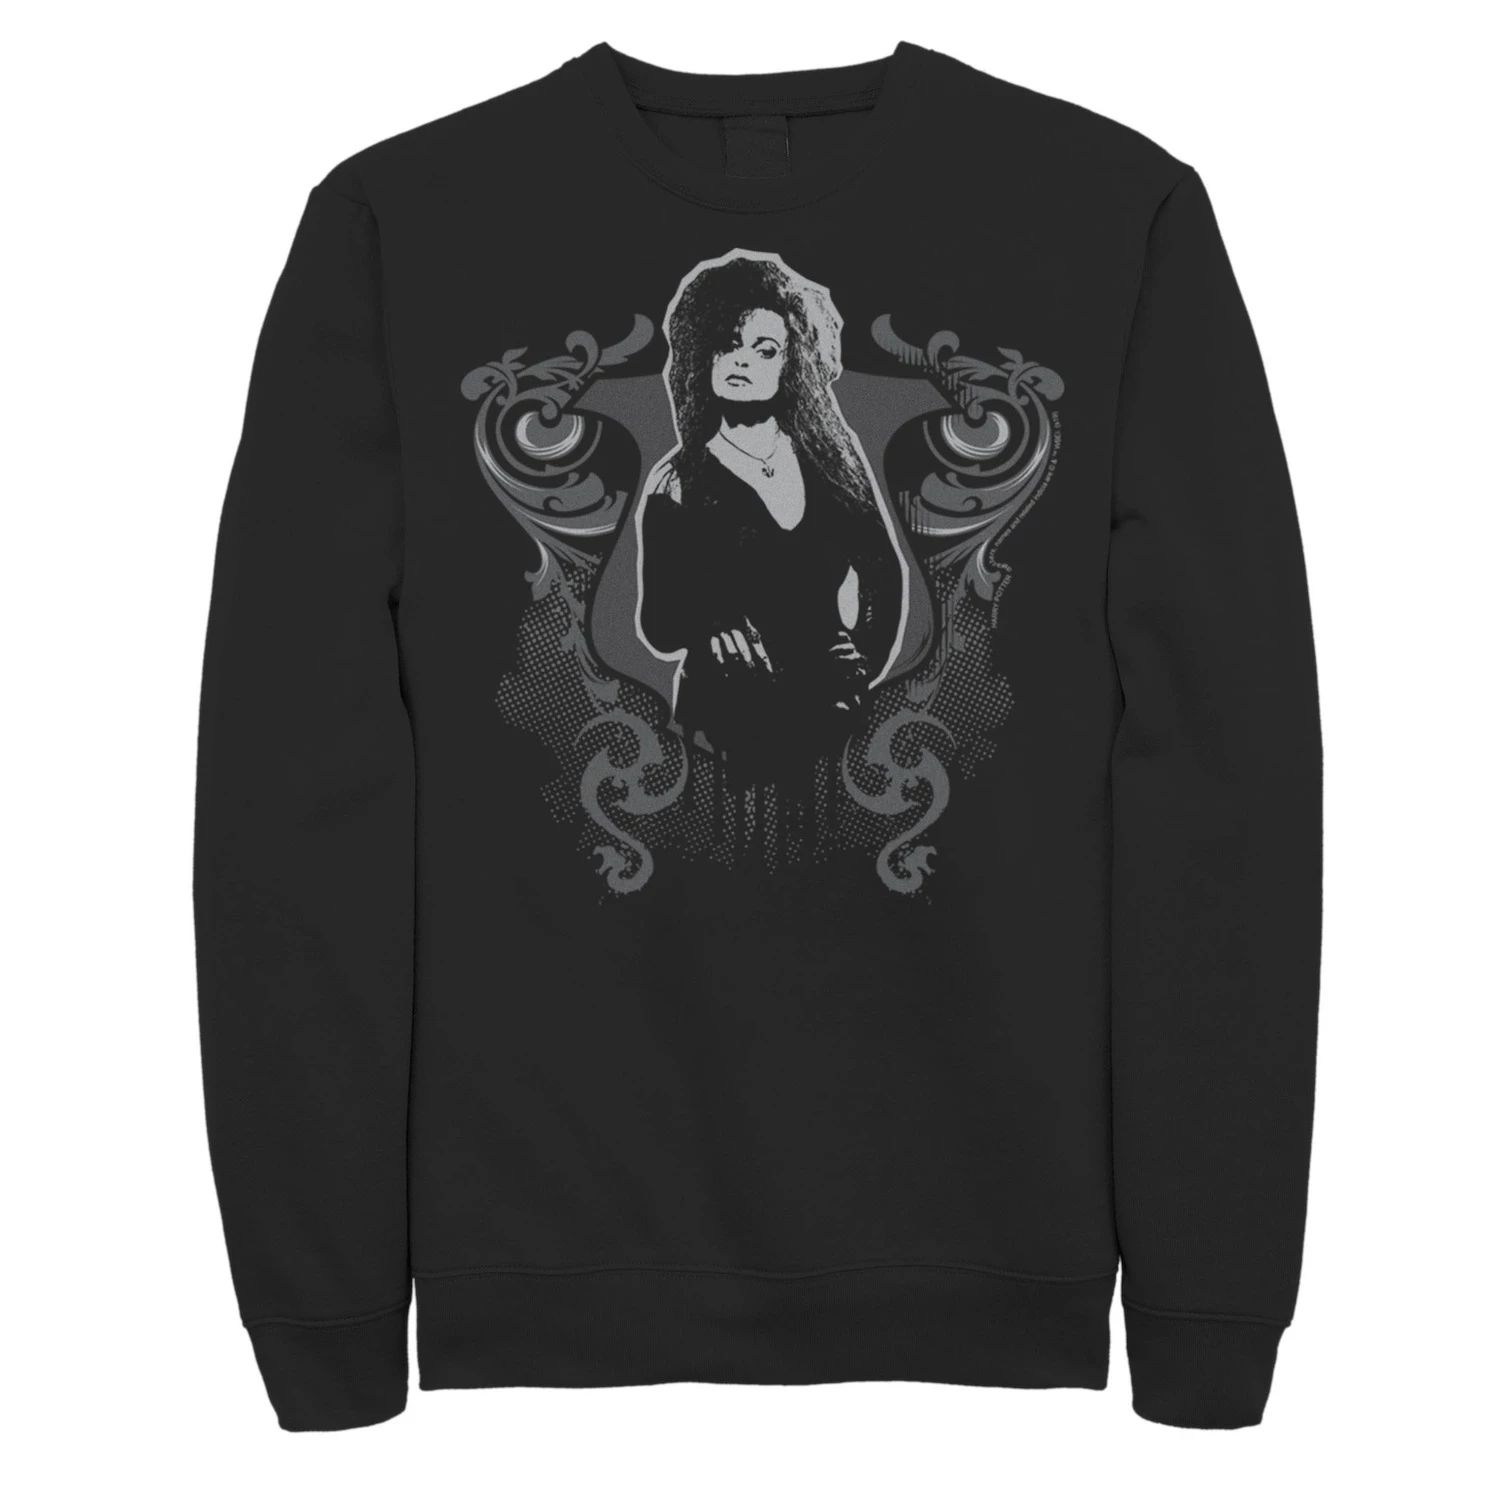 значок harry potter bellatrix lestrange Мужской флисовый пуловер с рисунком Bellatrix Lestrange с капающим портретом Harry Potter